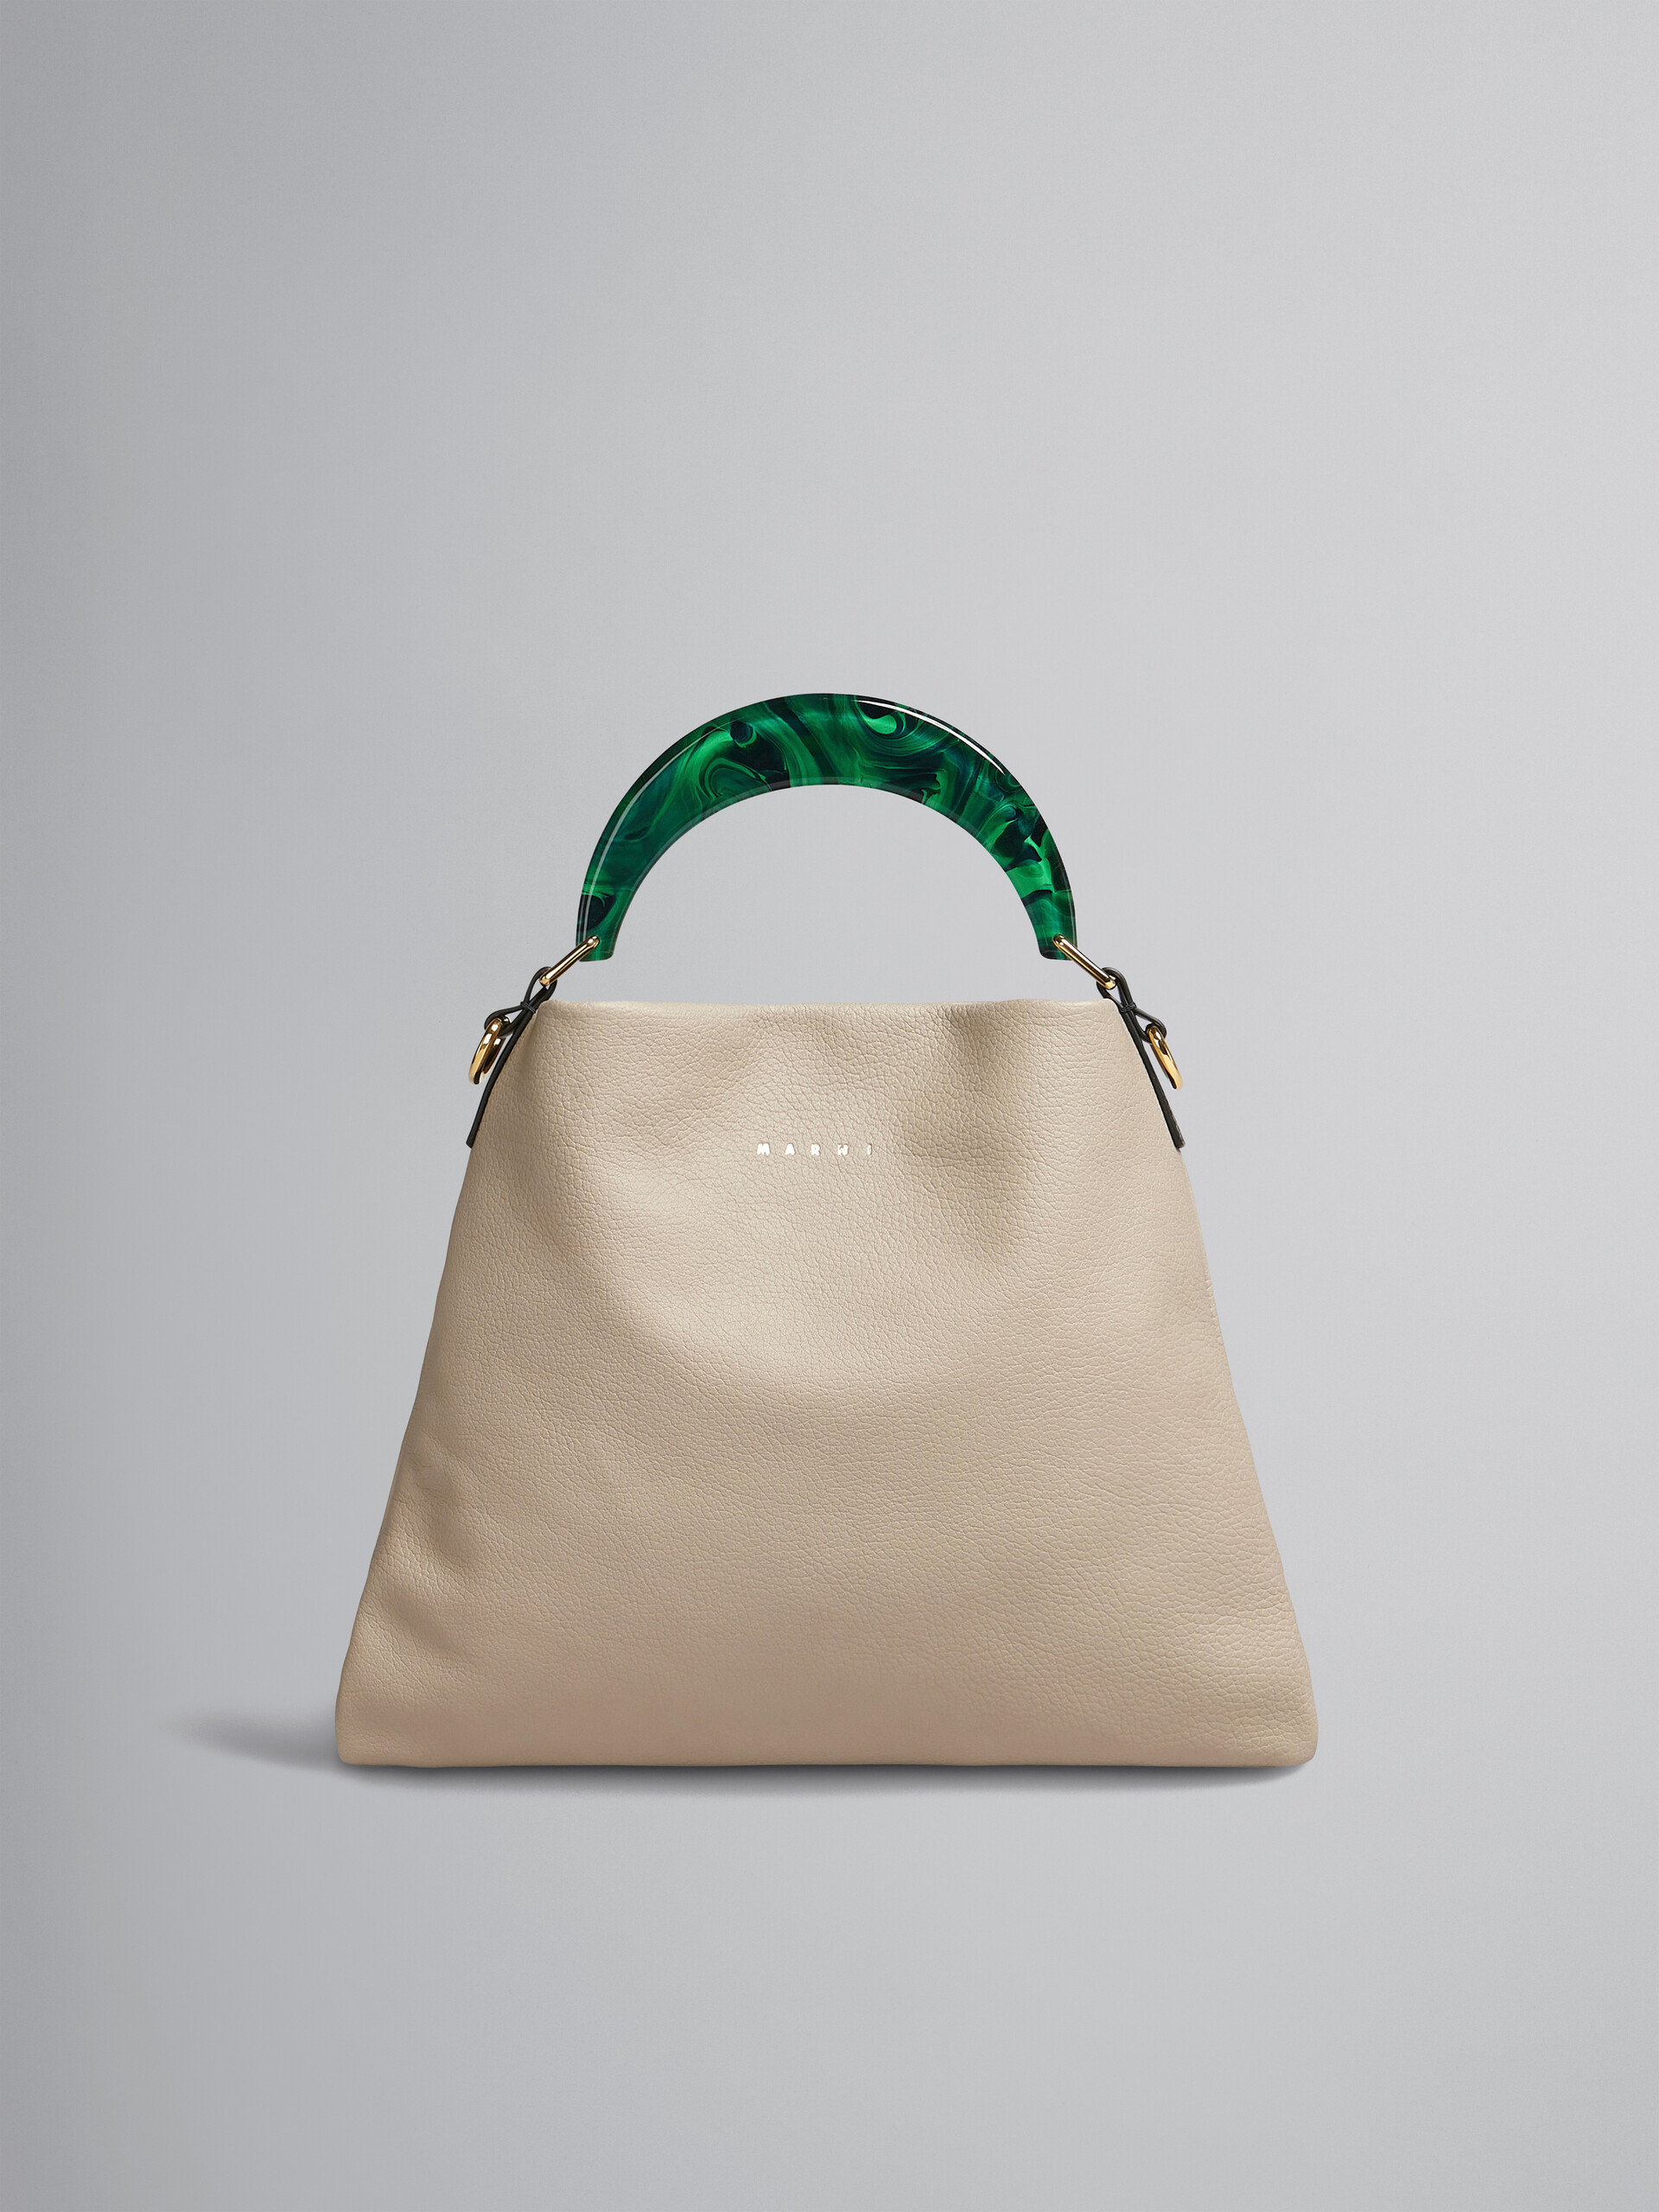 Venice small bag in beige leather - Shoulder Bag - Image 1